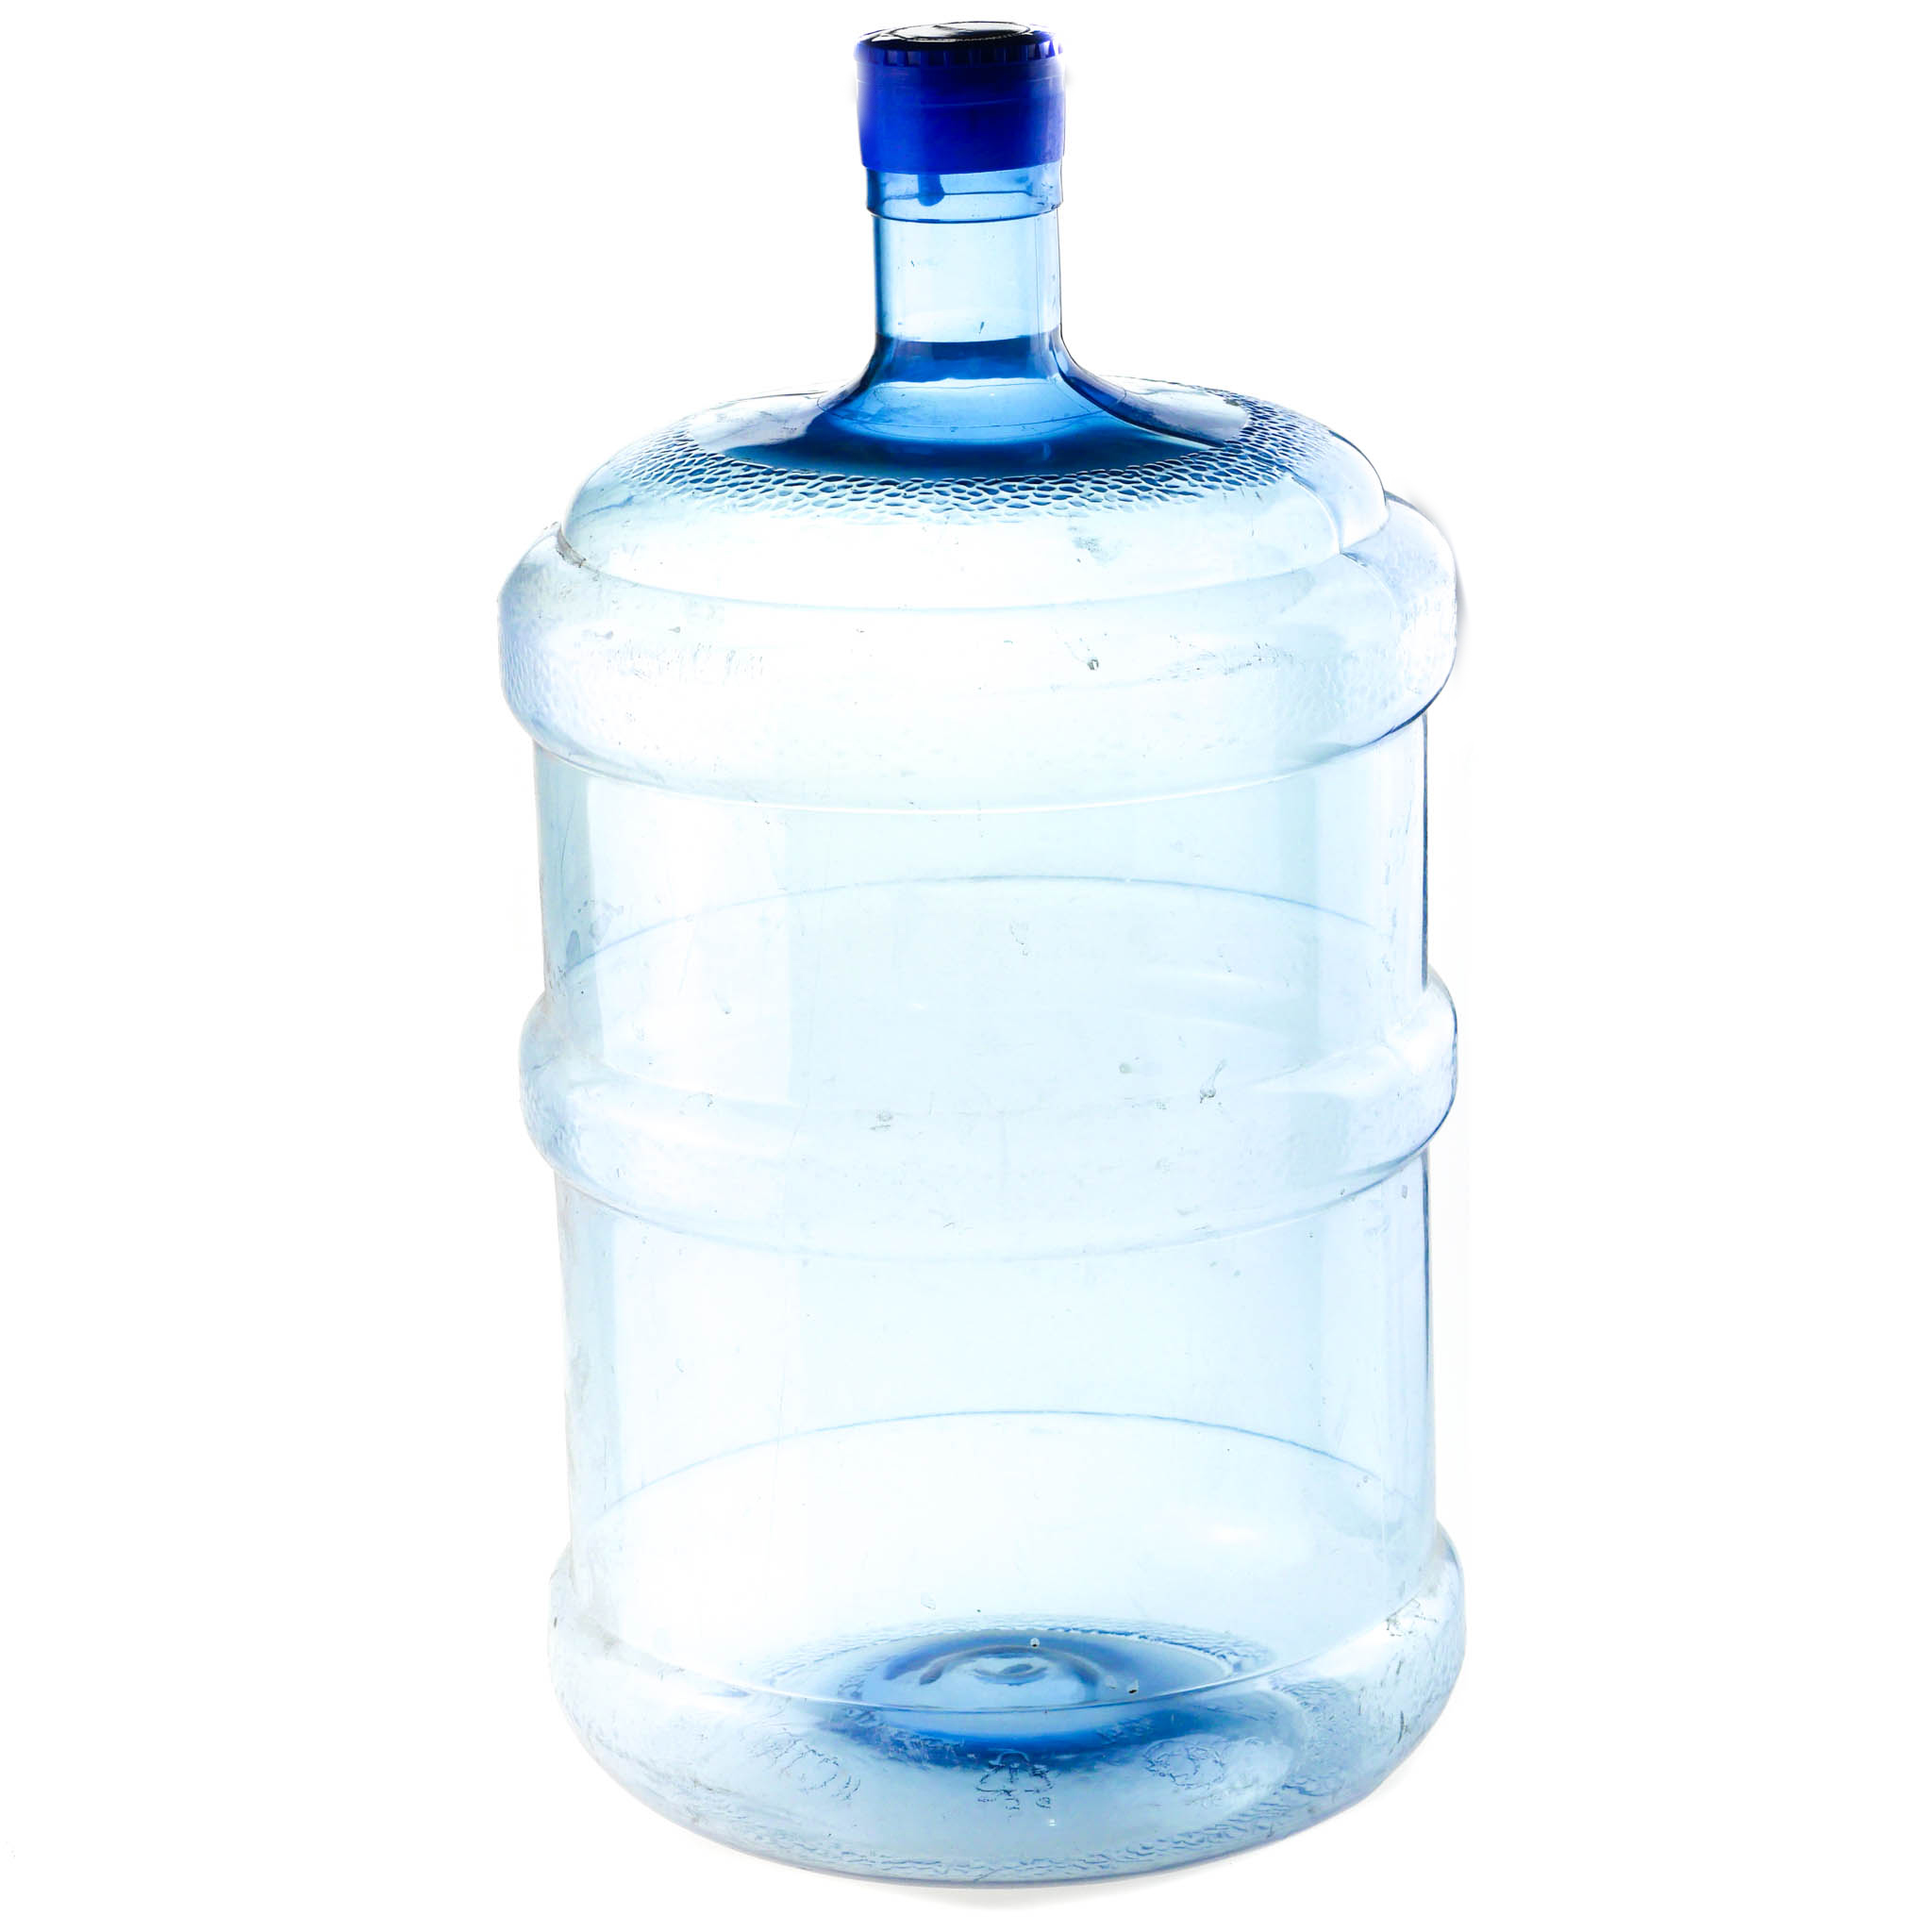 Пустые бутыли для воды 19 литров. ПЭТ-бутыль 18.9 л. Бутыль ПЭТ 18,9л (1 сорт) без крышки е/п. Бутыль поликарбонатная (18,9/19л). Бутыль многооборотная 19 литров ПЭТ.